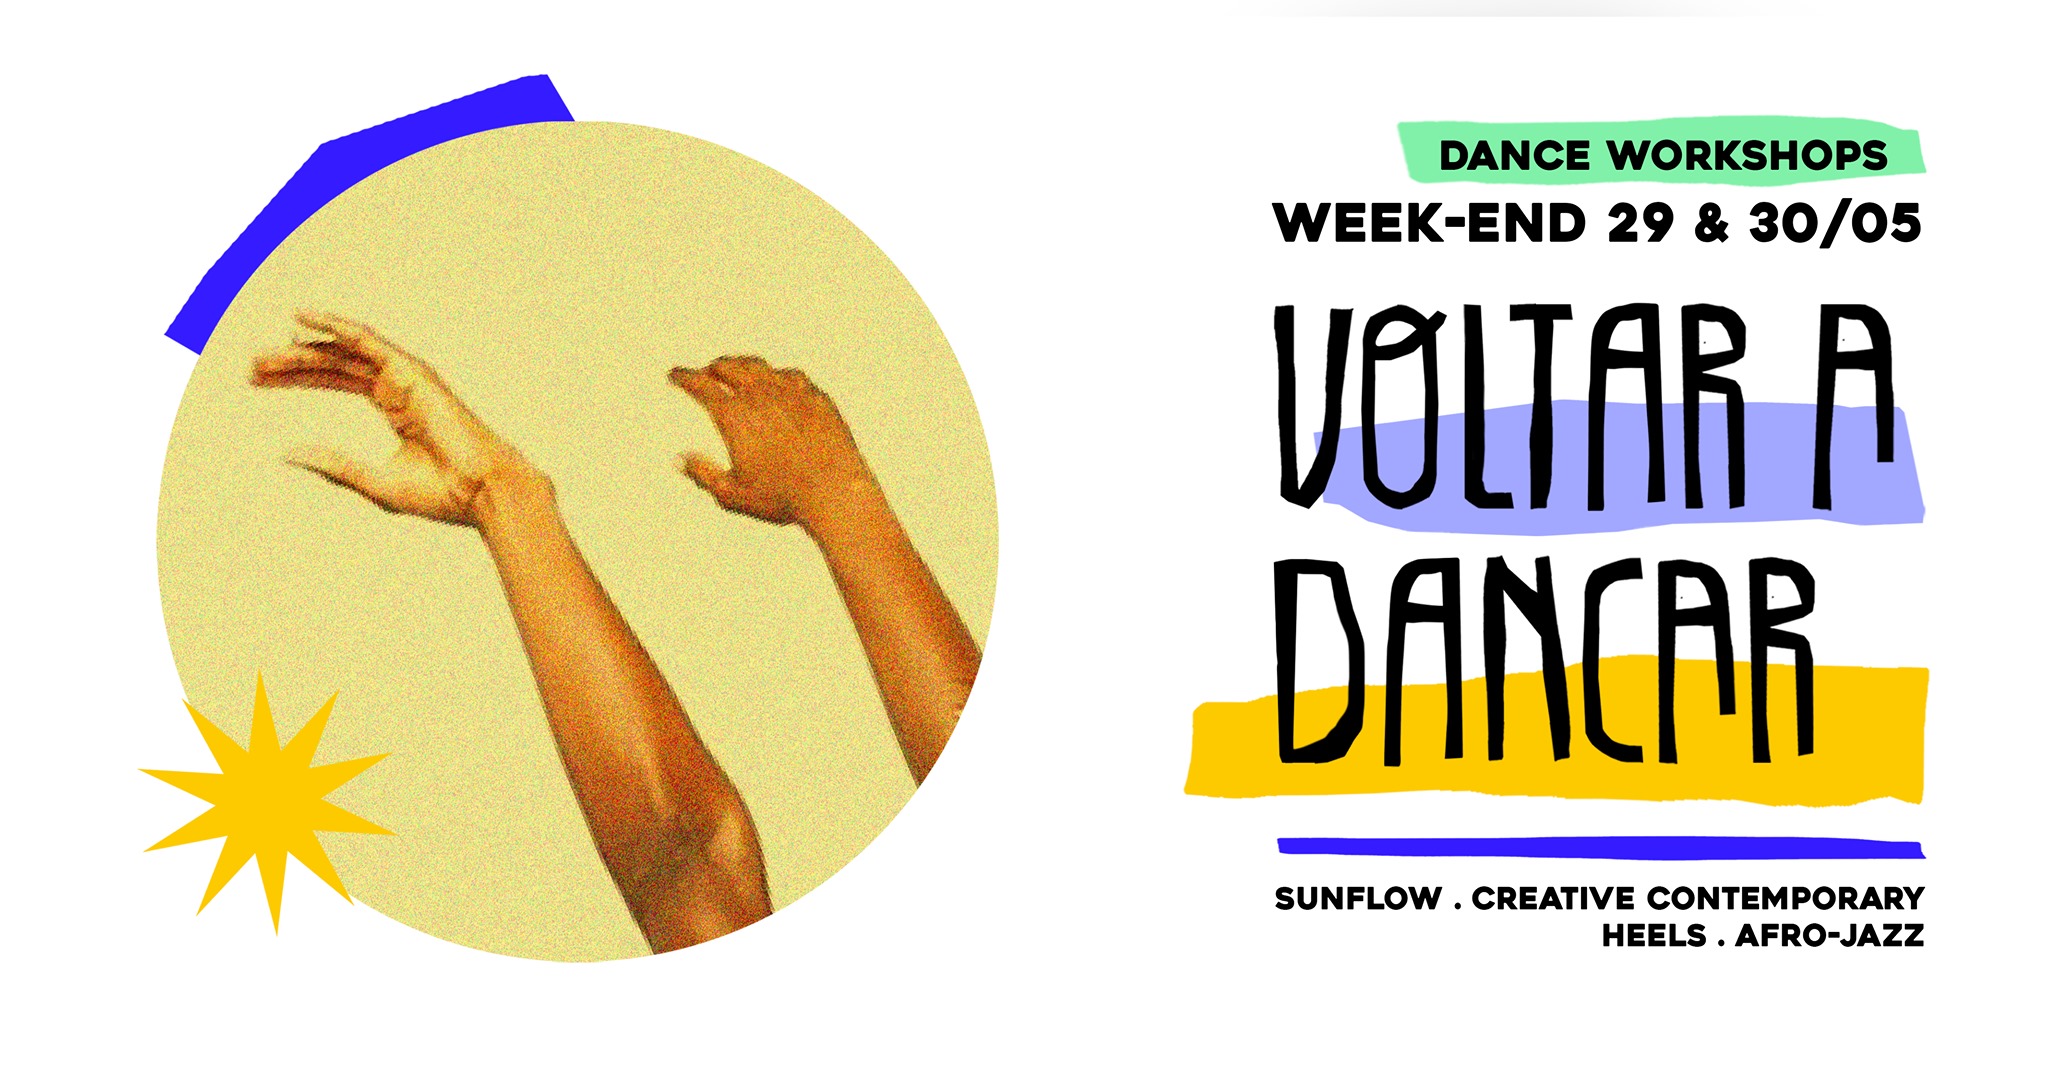 Voltar a dançar - A weekend of Dance Workshops